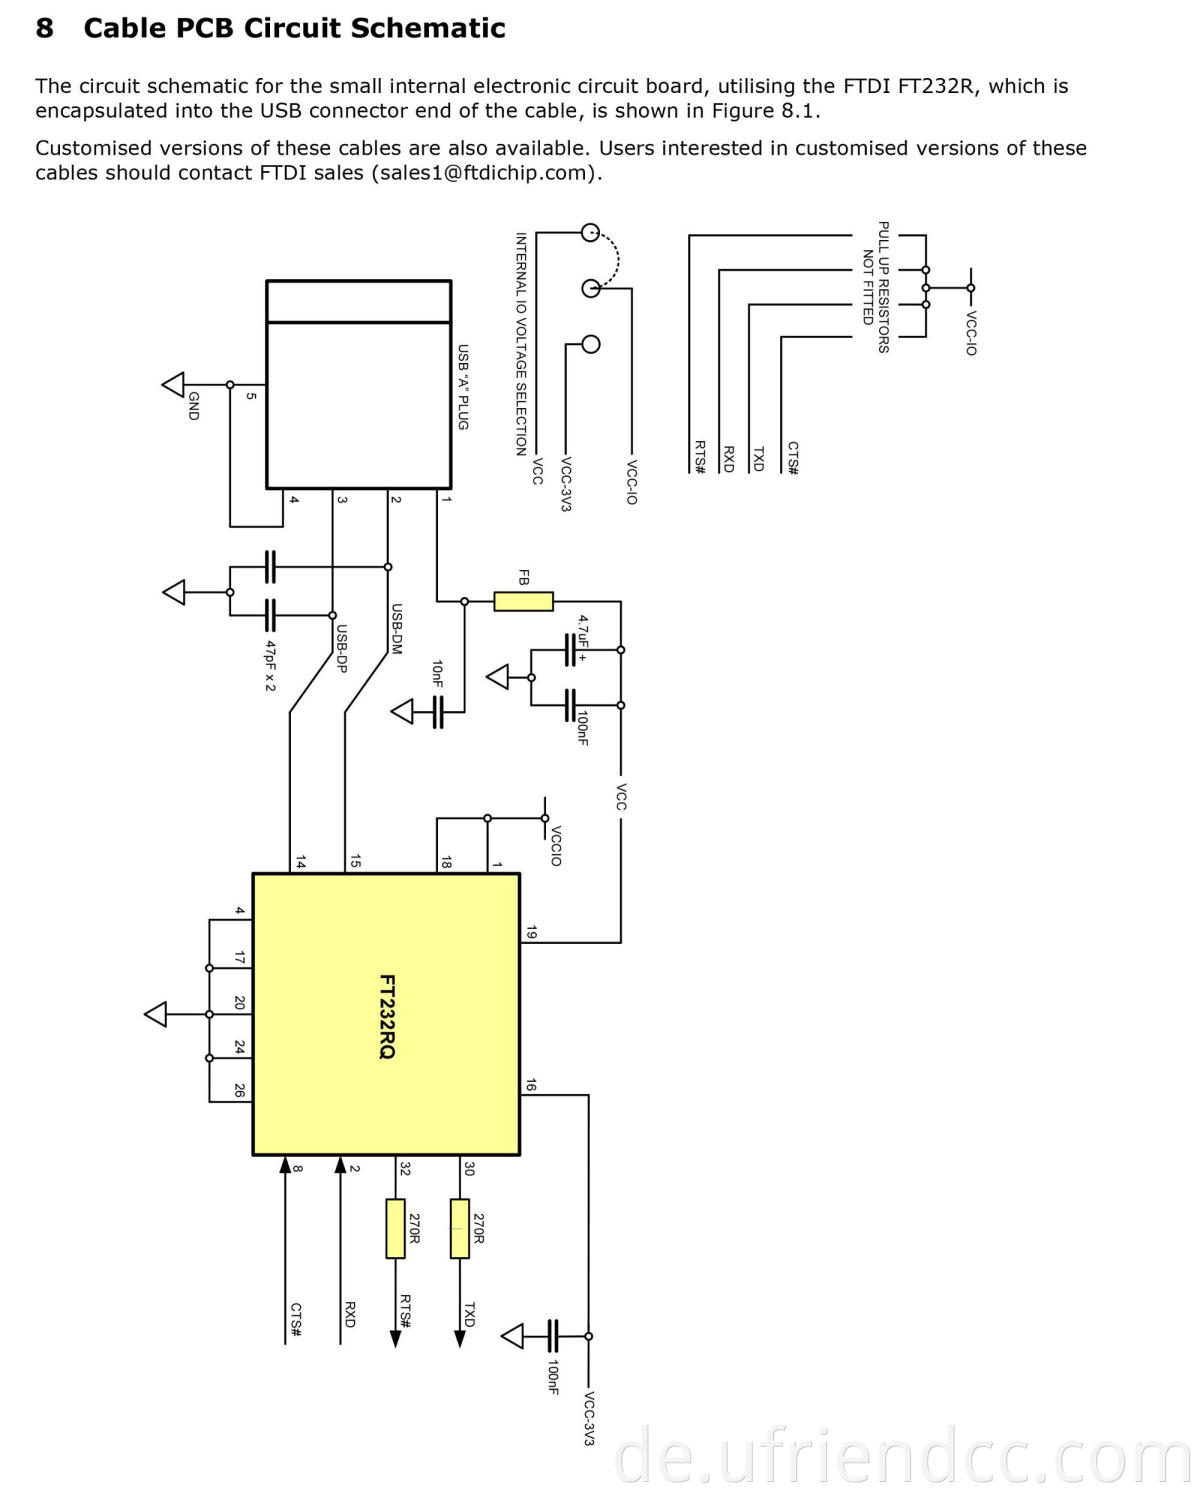 Benutzerdefinierte Chip PL232RL RS232 USB Typ C zu Dupont FTDI -Kabel für die Laptop -Verbindung